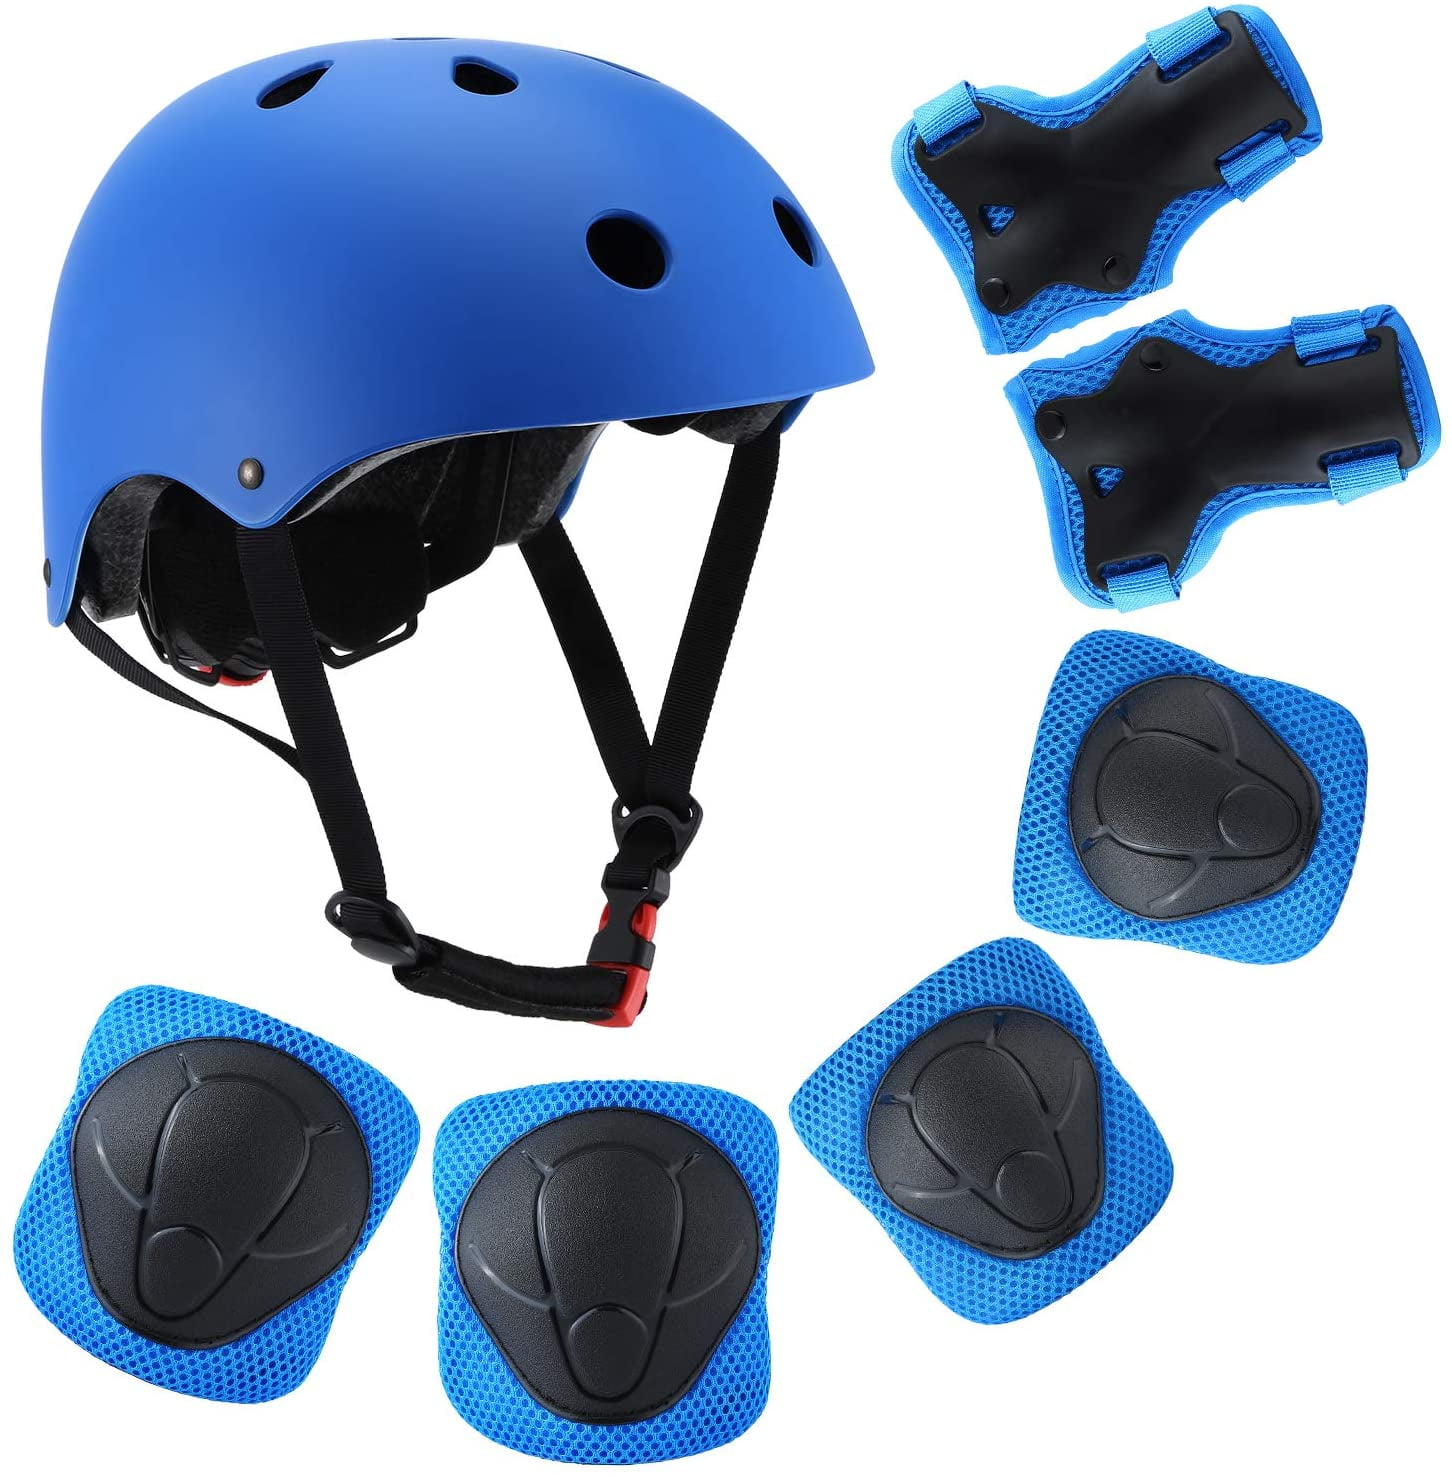 Kids Children Roller Skating Bike Bicycle Helmet Knee Wrist Guard Elbow Pad Set 